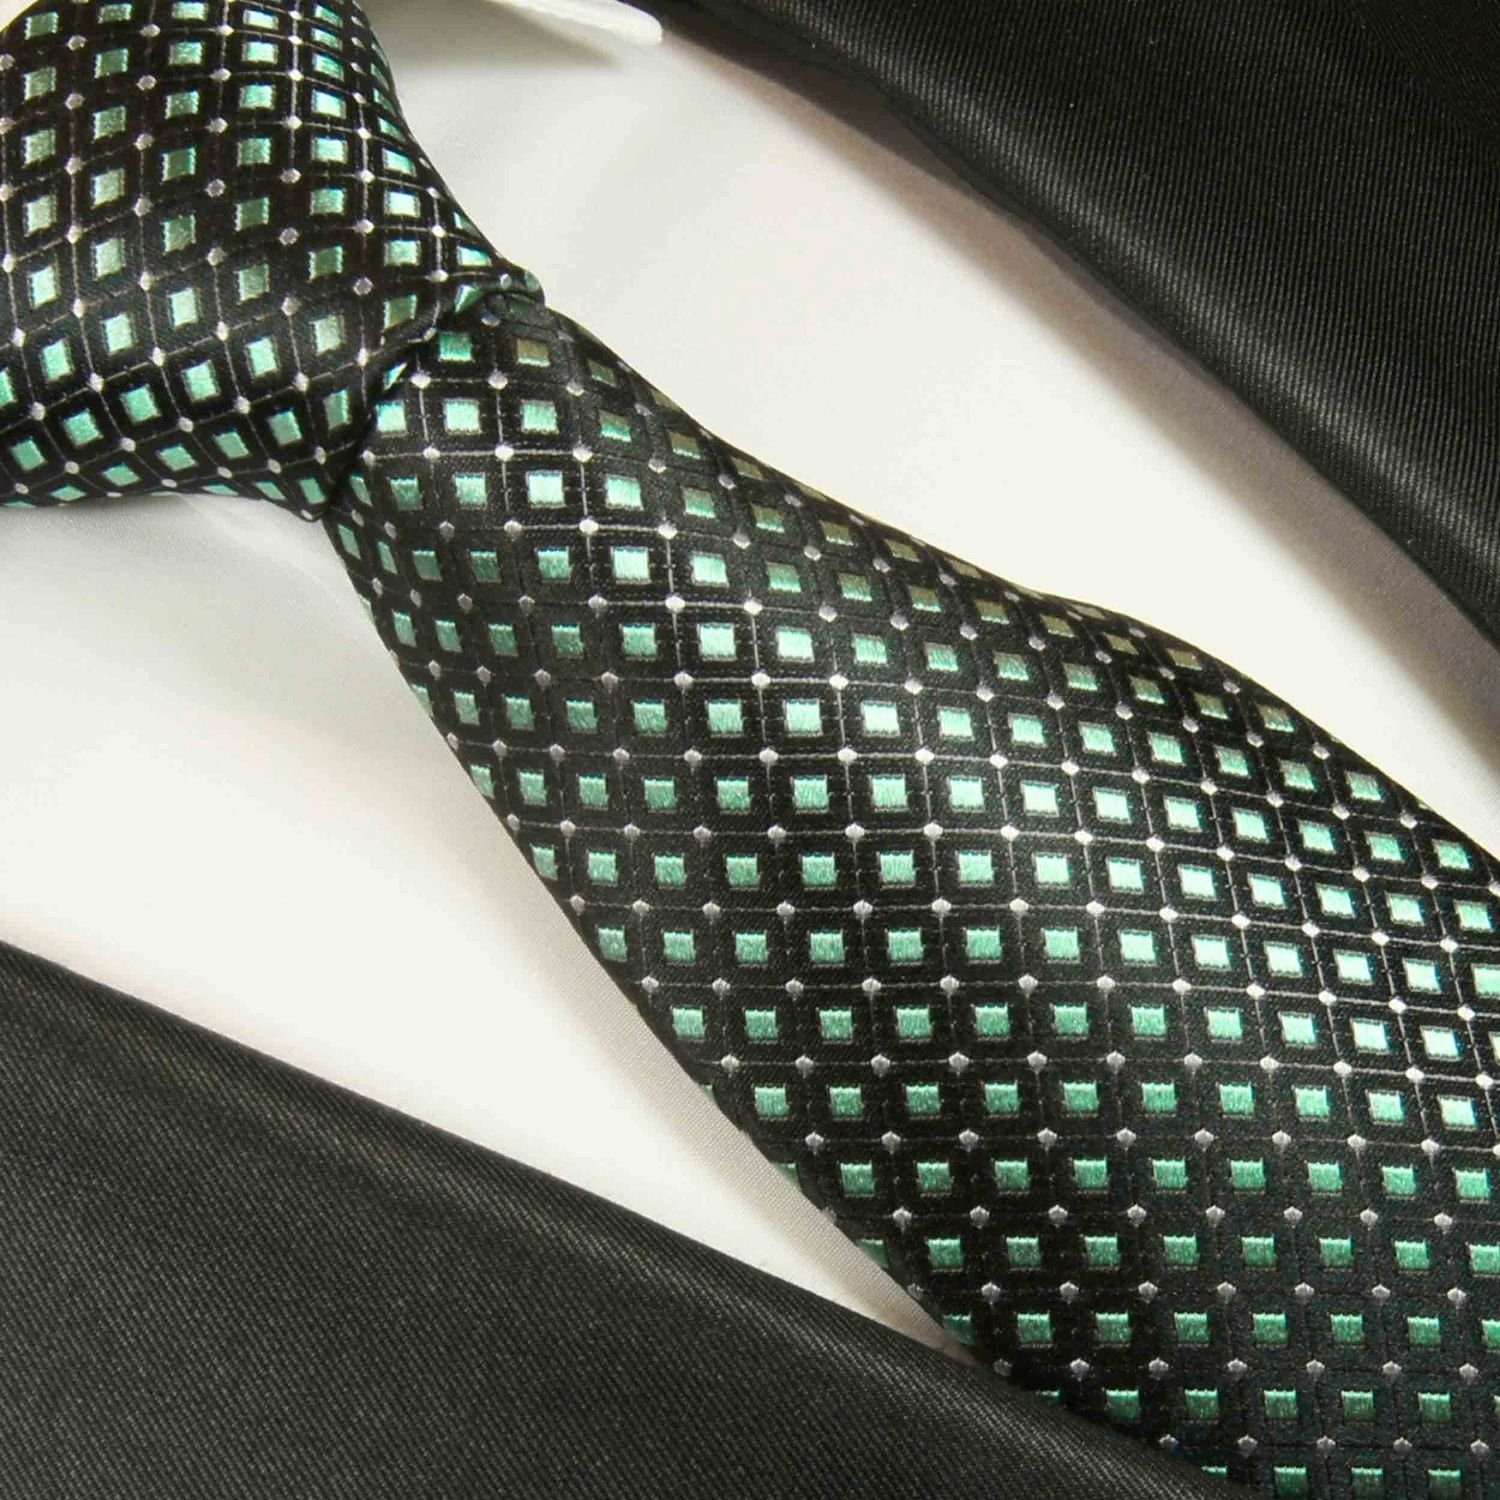 Paul Malone Extra Herren lang modern mit 2047 (165cm), 100% mit Seidenkrawatte gepunktet grün Tuch Einstecktuch) Seide Schmal 2-St., Krawatte Krawatte (Set, (6cm)